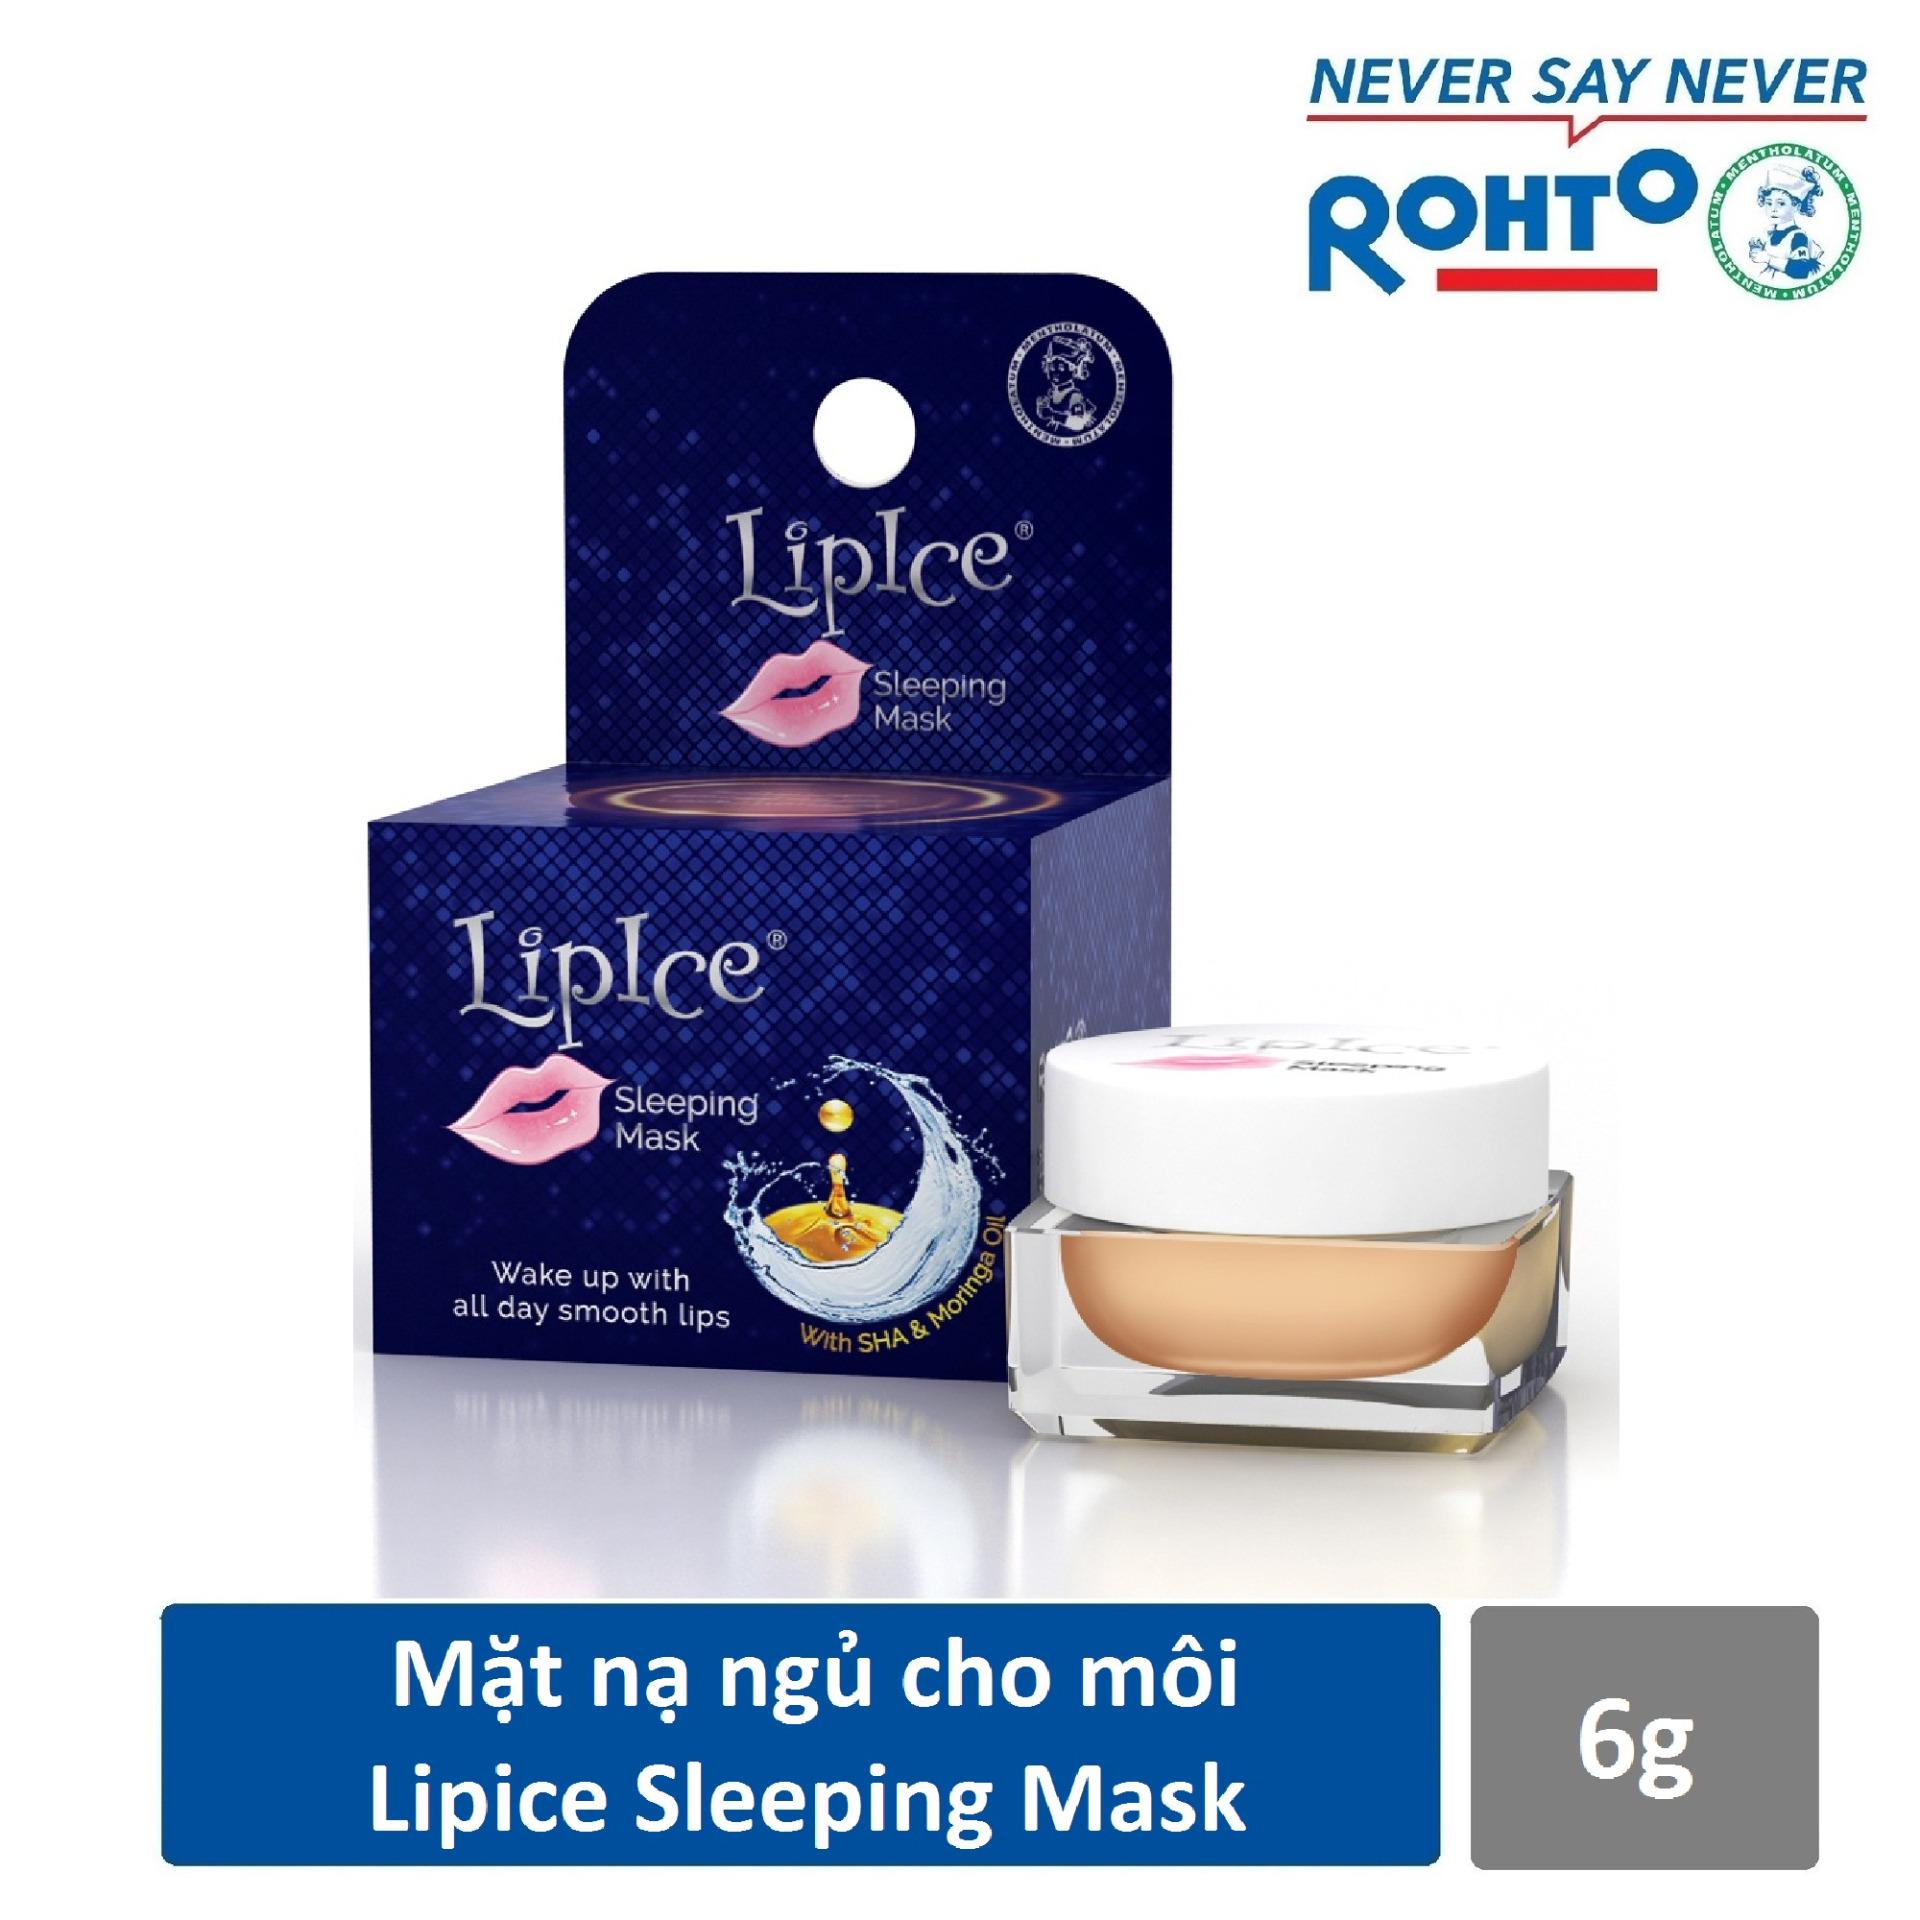 Mặt nạ ngủ cho môi LipIce Sleeping Mask 6g